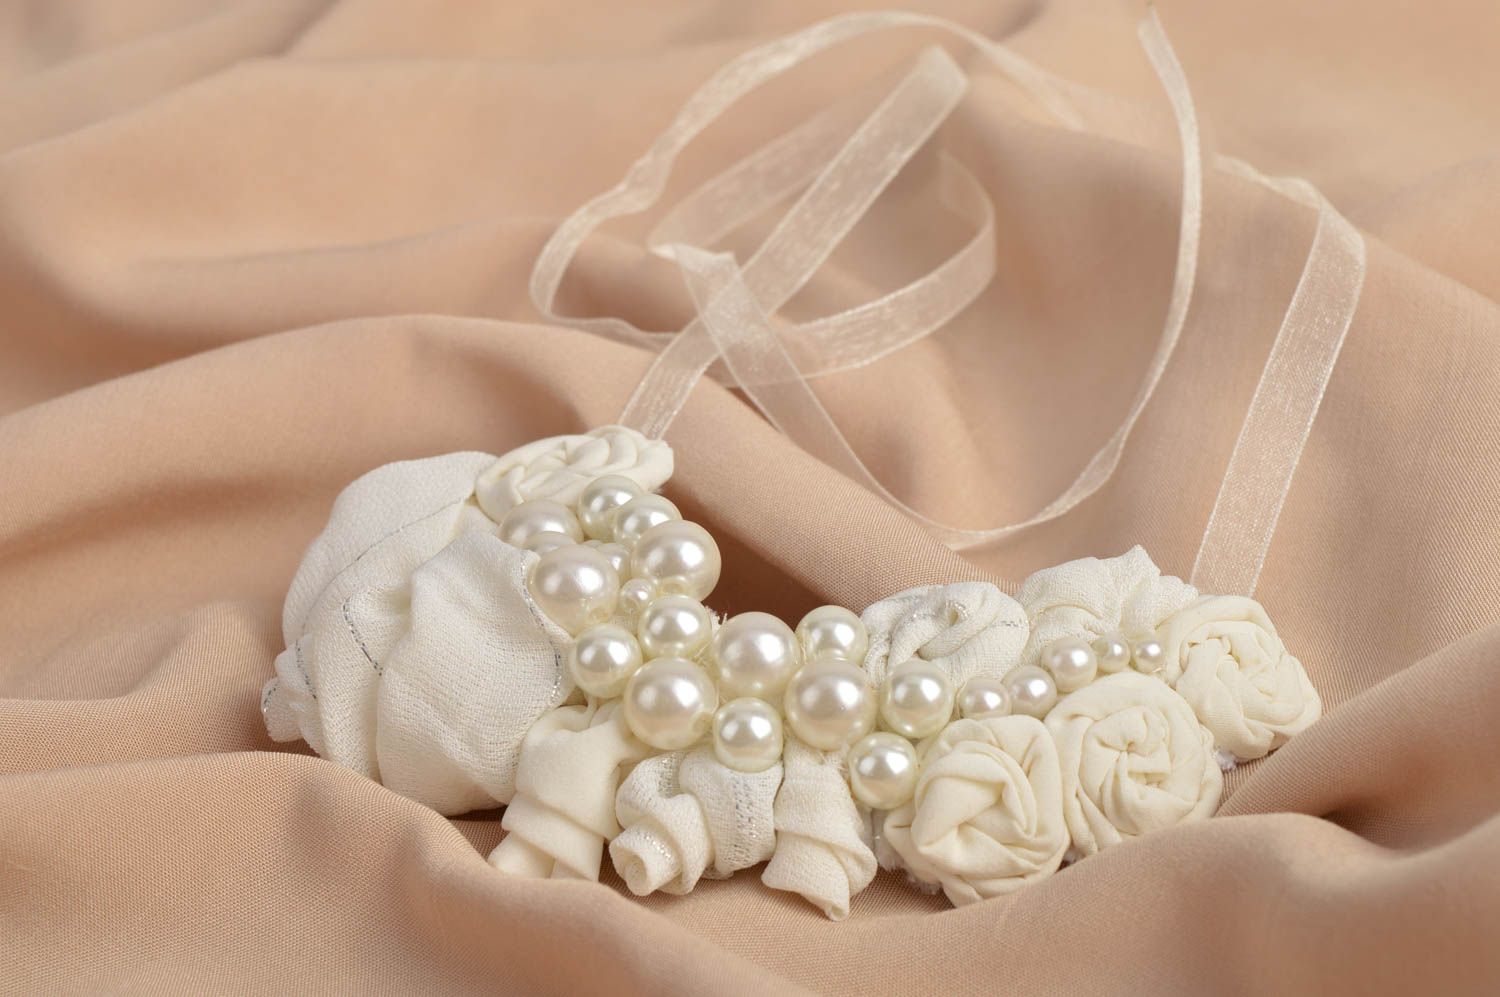 Handmade white festive jewelry stylish designer necklace elegant necklace photo 1